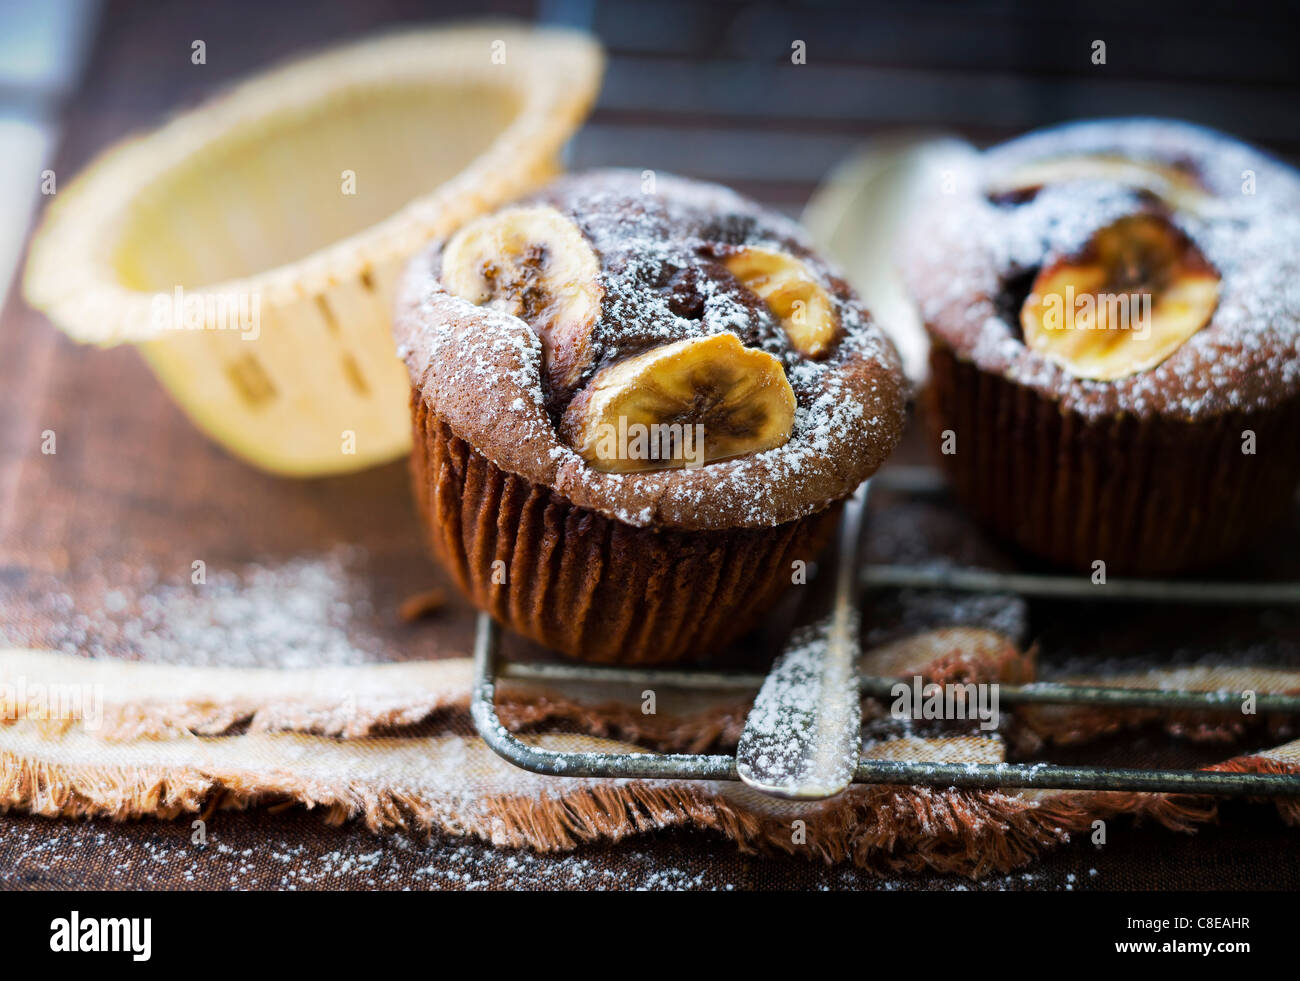 Banana and chocolate muffins Stock Photo